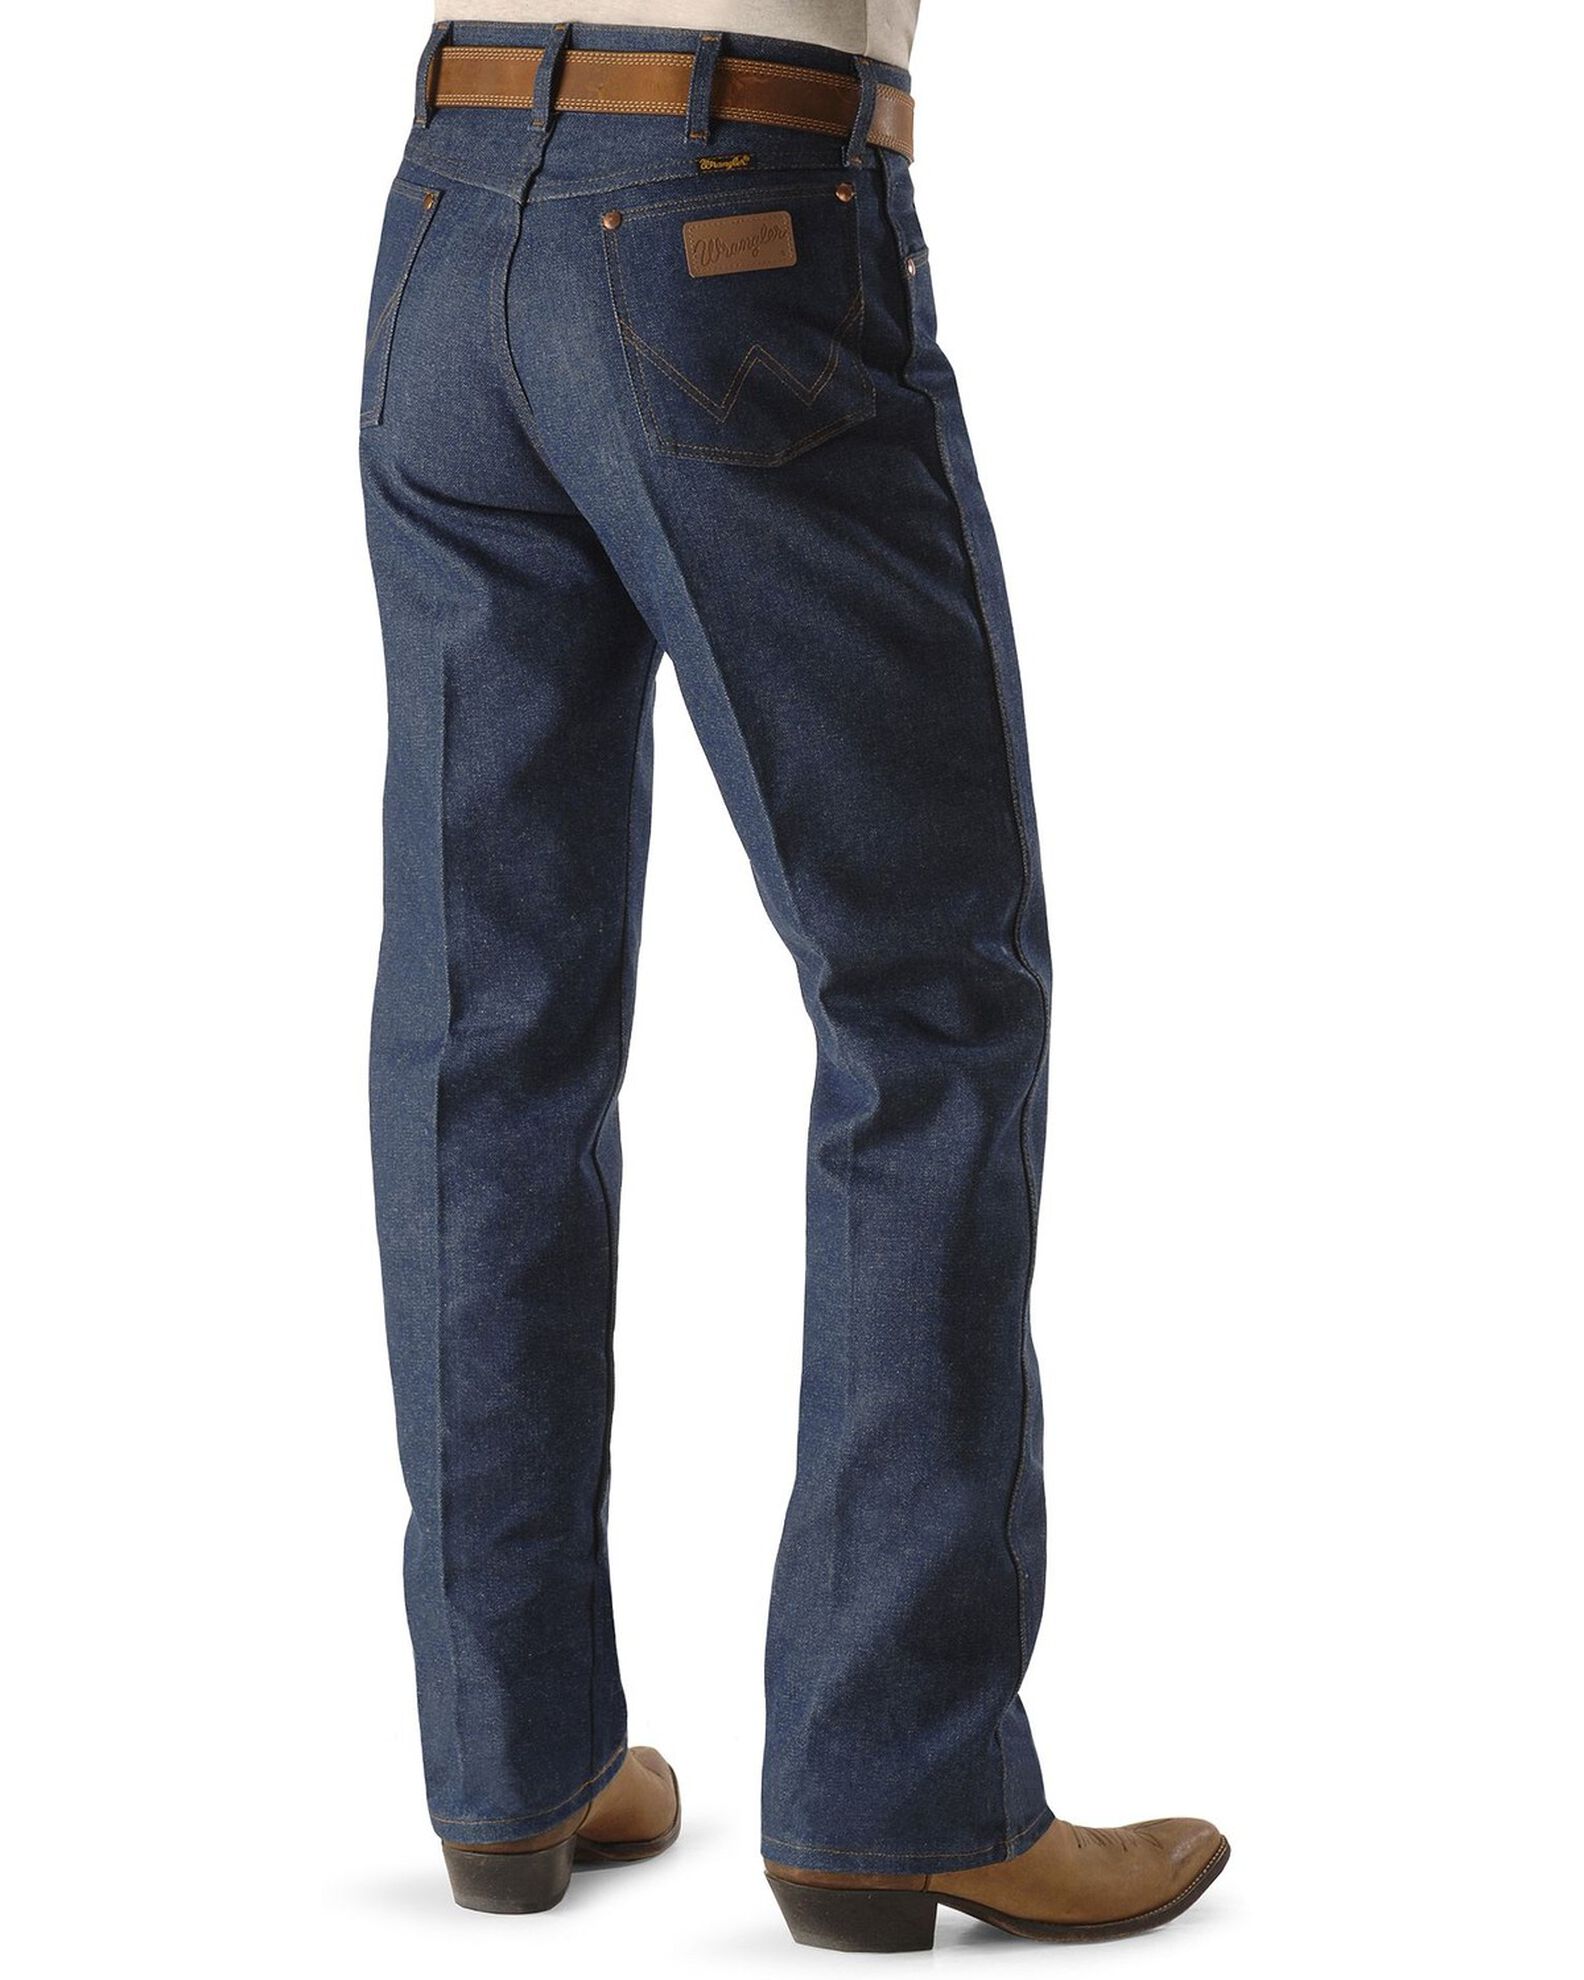 Wrangler Men's Cowboy Cut Rigid Original Fit Jeans - 38" & 40" Tall Inseams